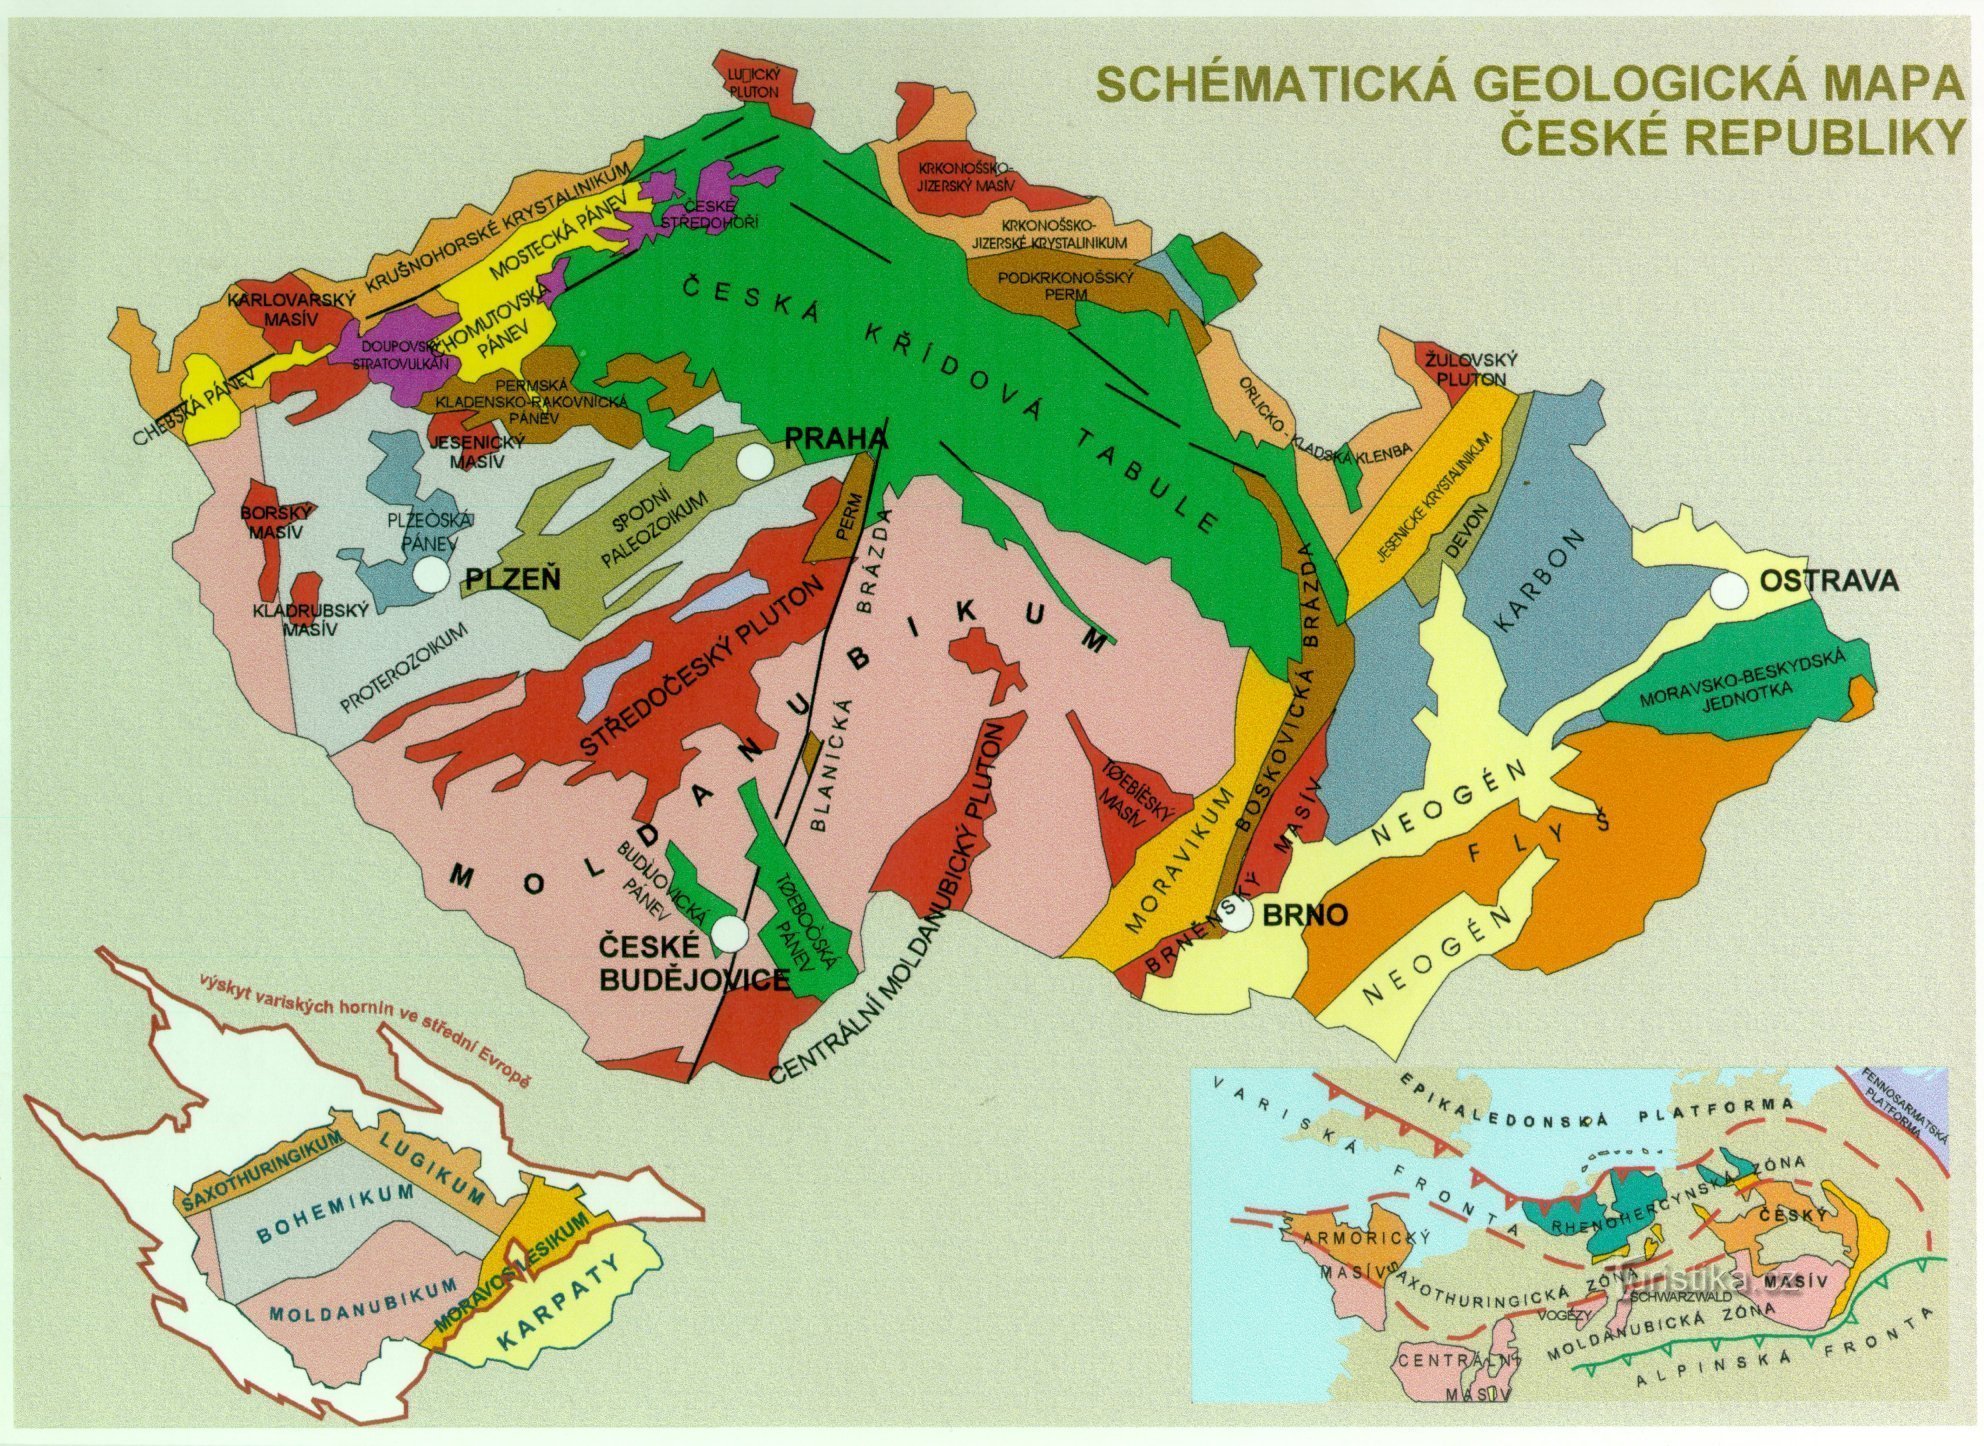 mapa geologiczna Czech - zdjęcie uzupełniające do tekstu (z https://www.ig.